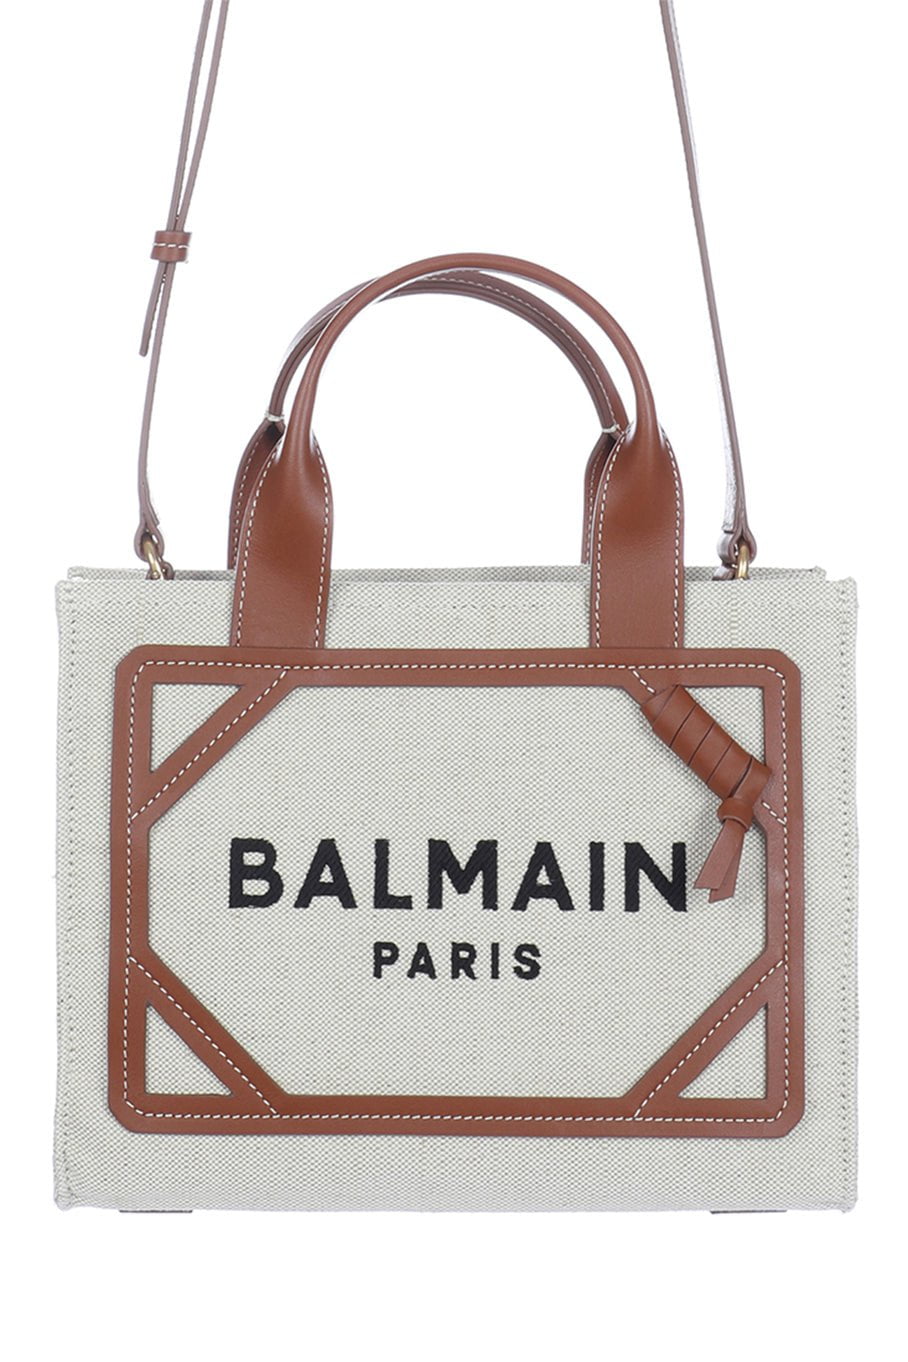 BALMAIN-B Army Small Tote Bag-Natural/Brown